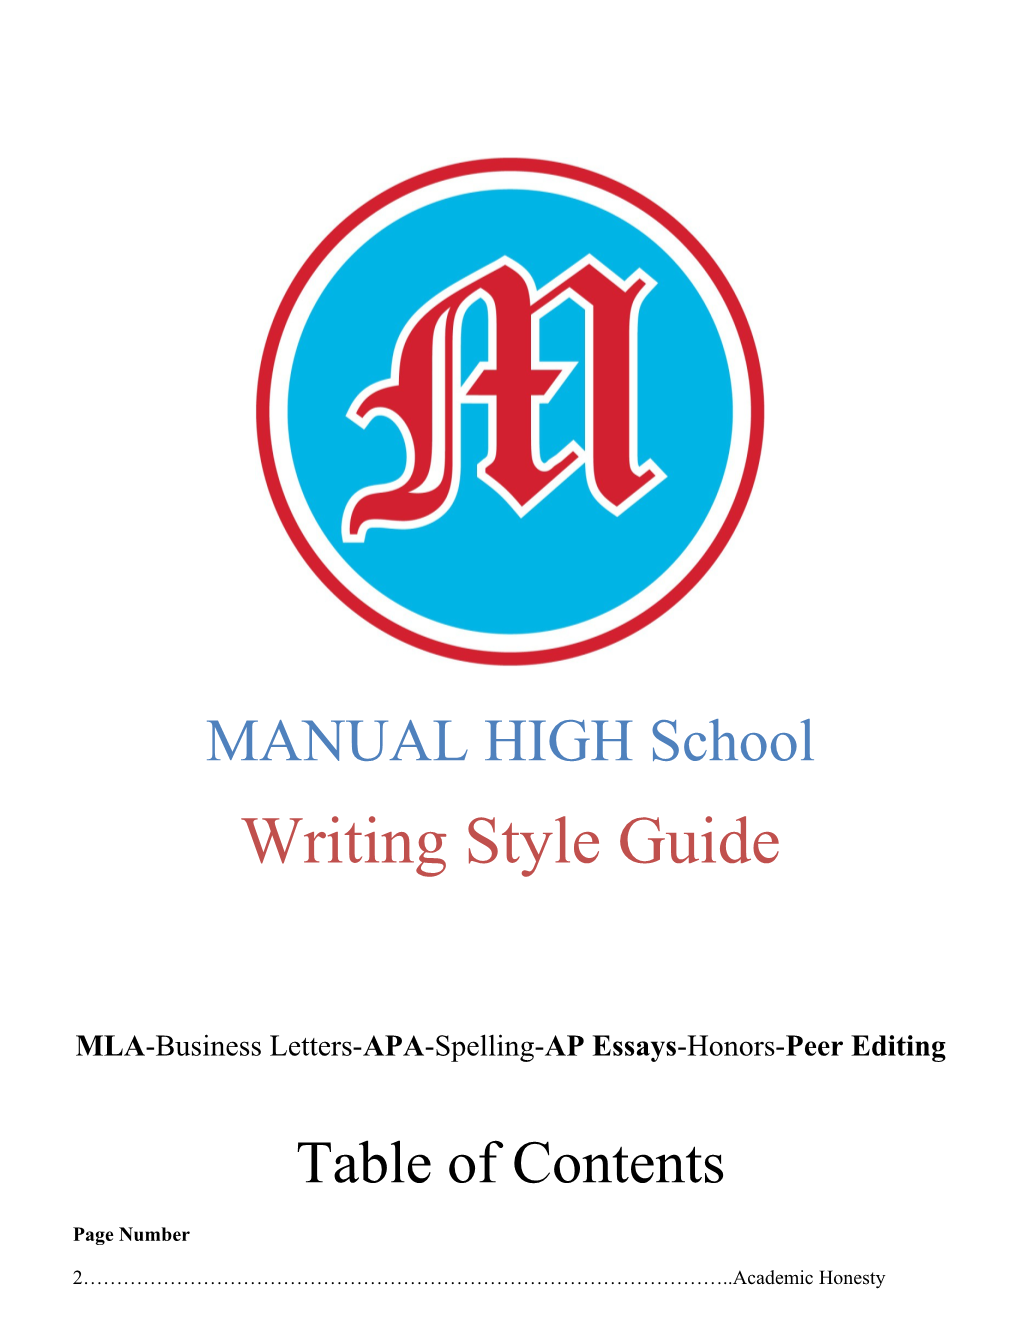 MLA-Business Letters-APA-Spelling-AP Essays-Honors-Peer Editing